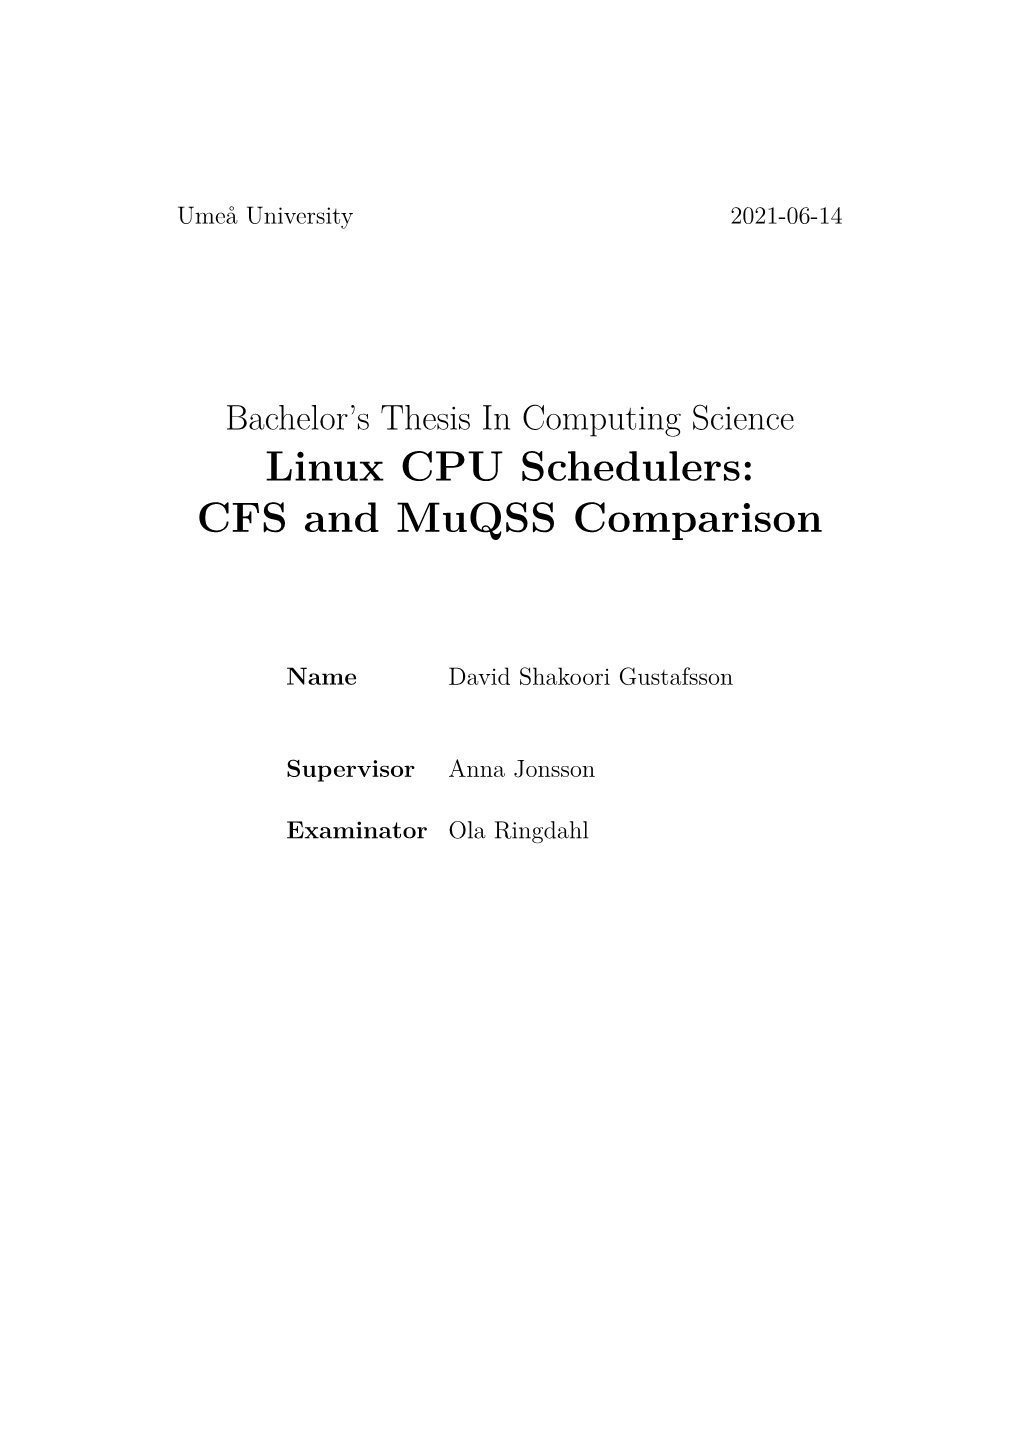 Linux CPU Schedulers: CFS and Muqss Comparison